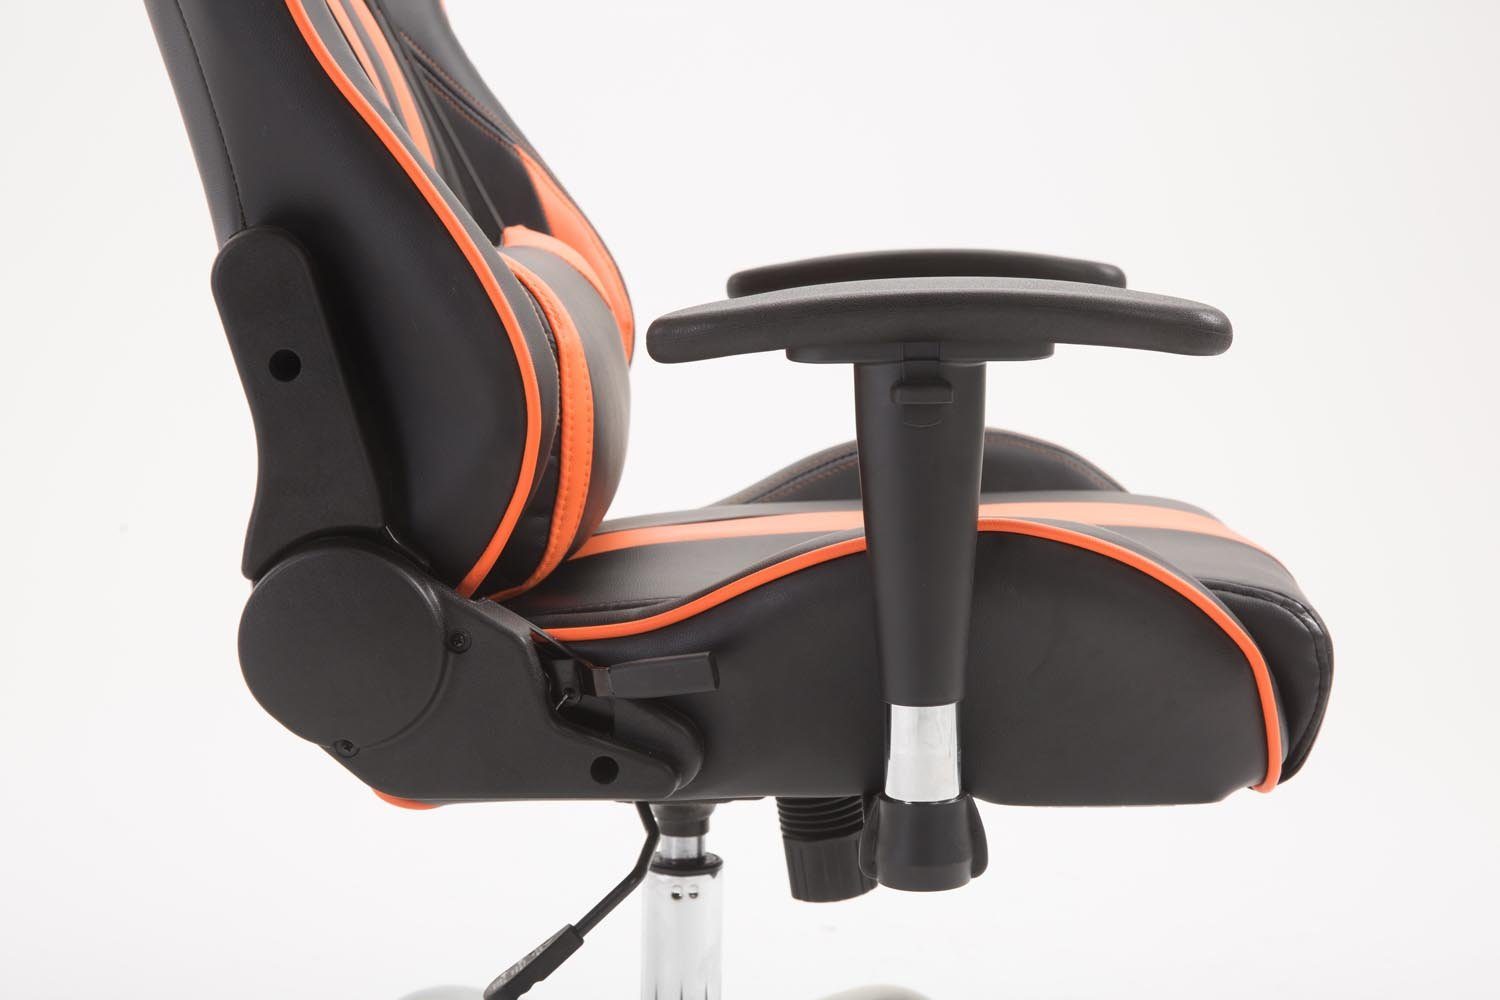 höhenverstellbar Kunstleder, Chair schwarz/orange drehbar V2 Limit und CLP Gaming